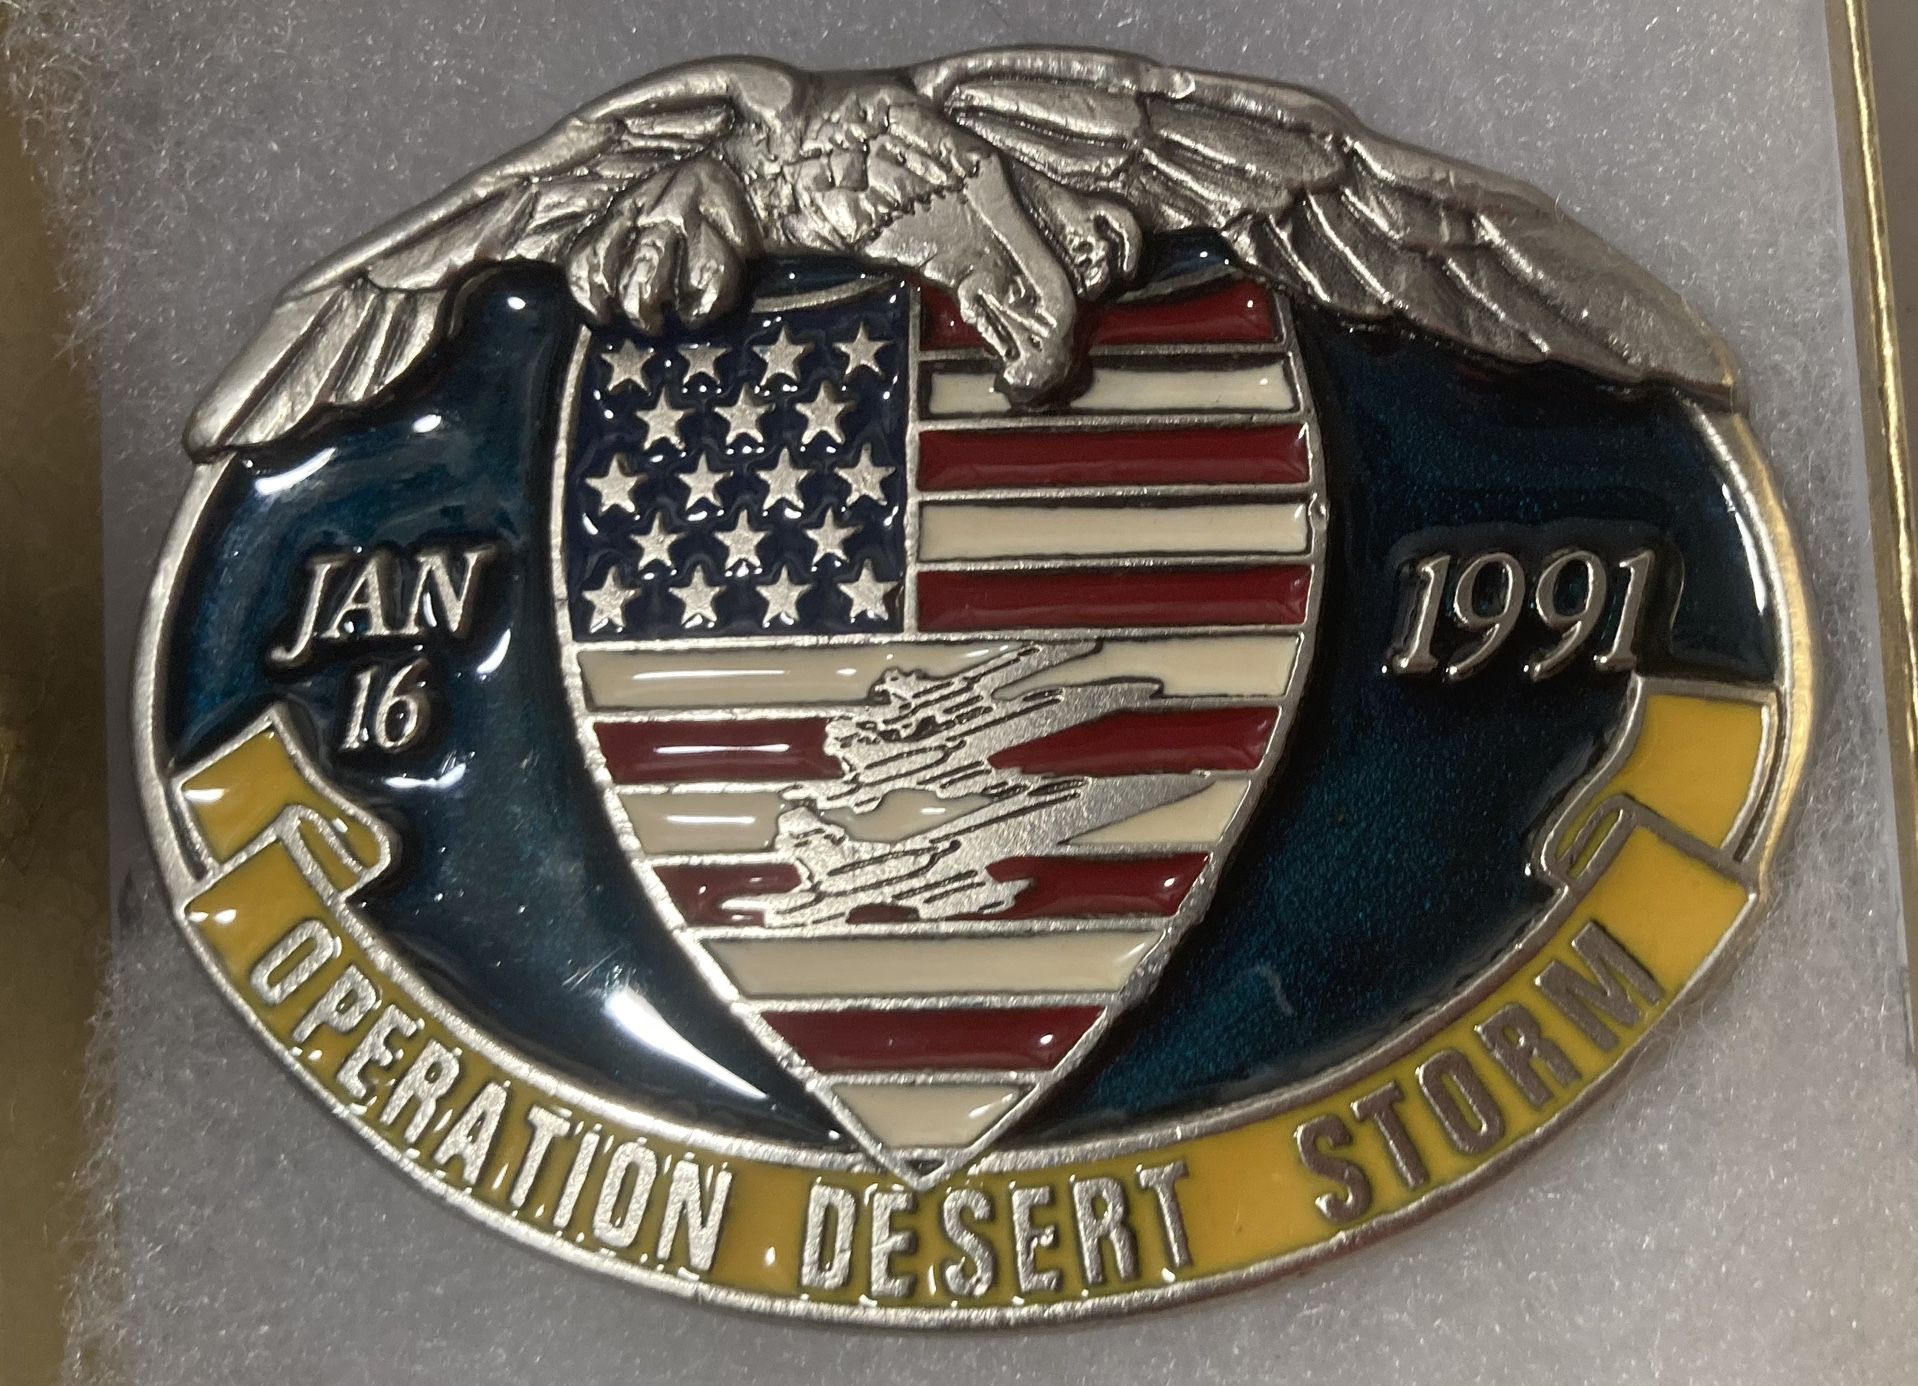 Vintage 1991 Belt Buckle Operation Desert Storm 